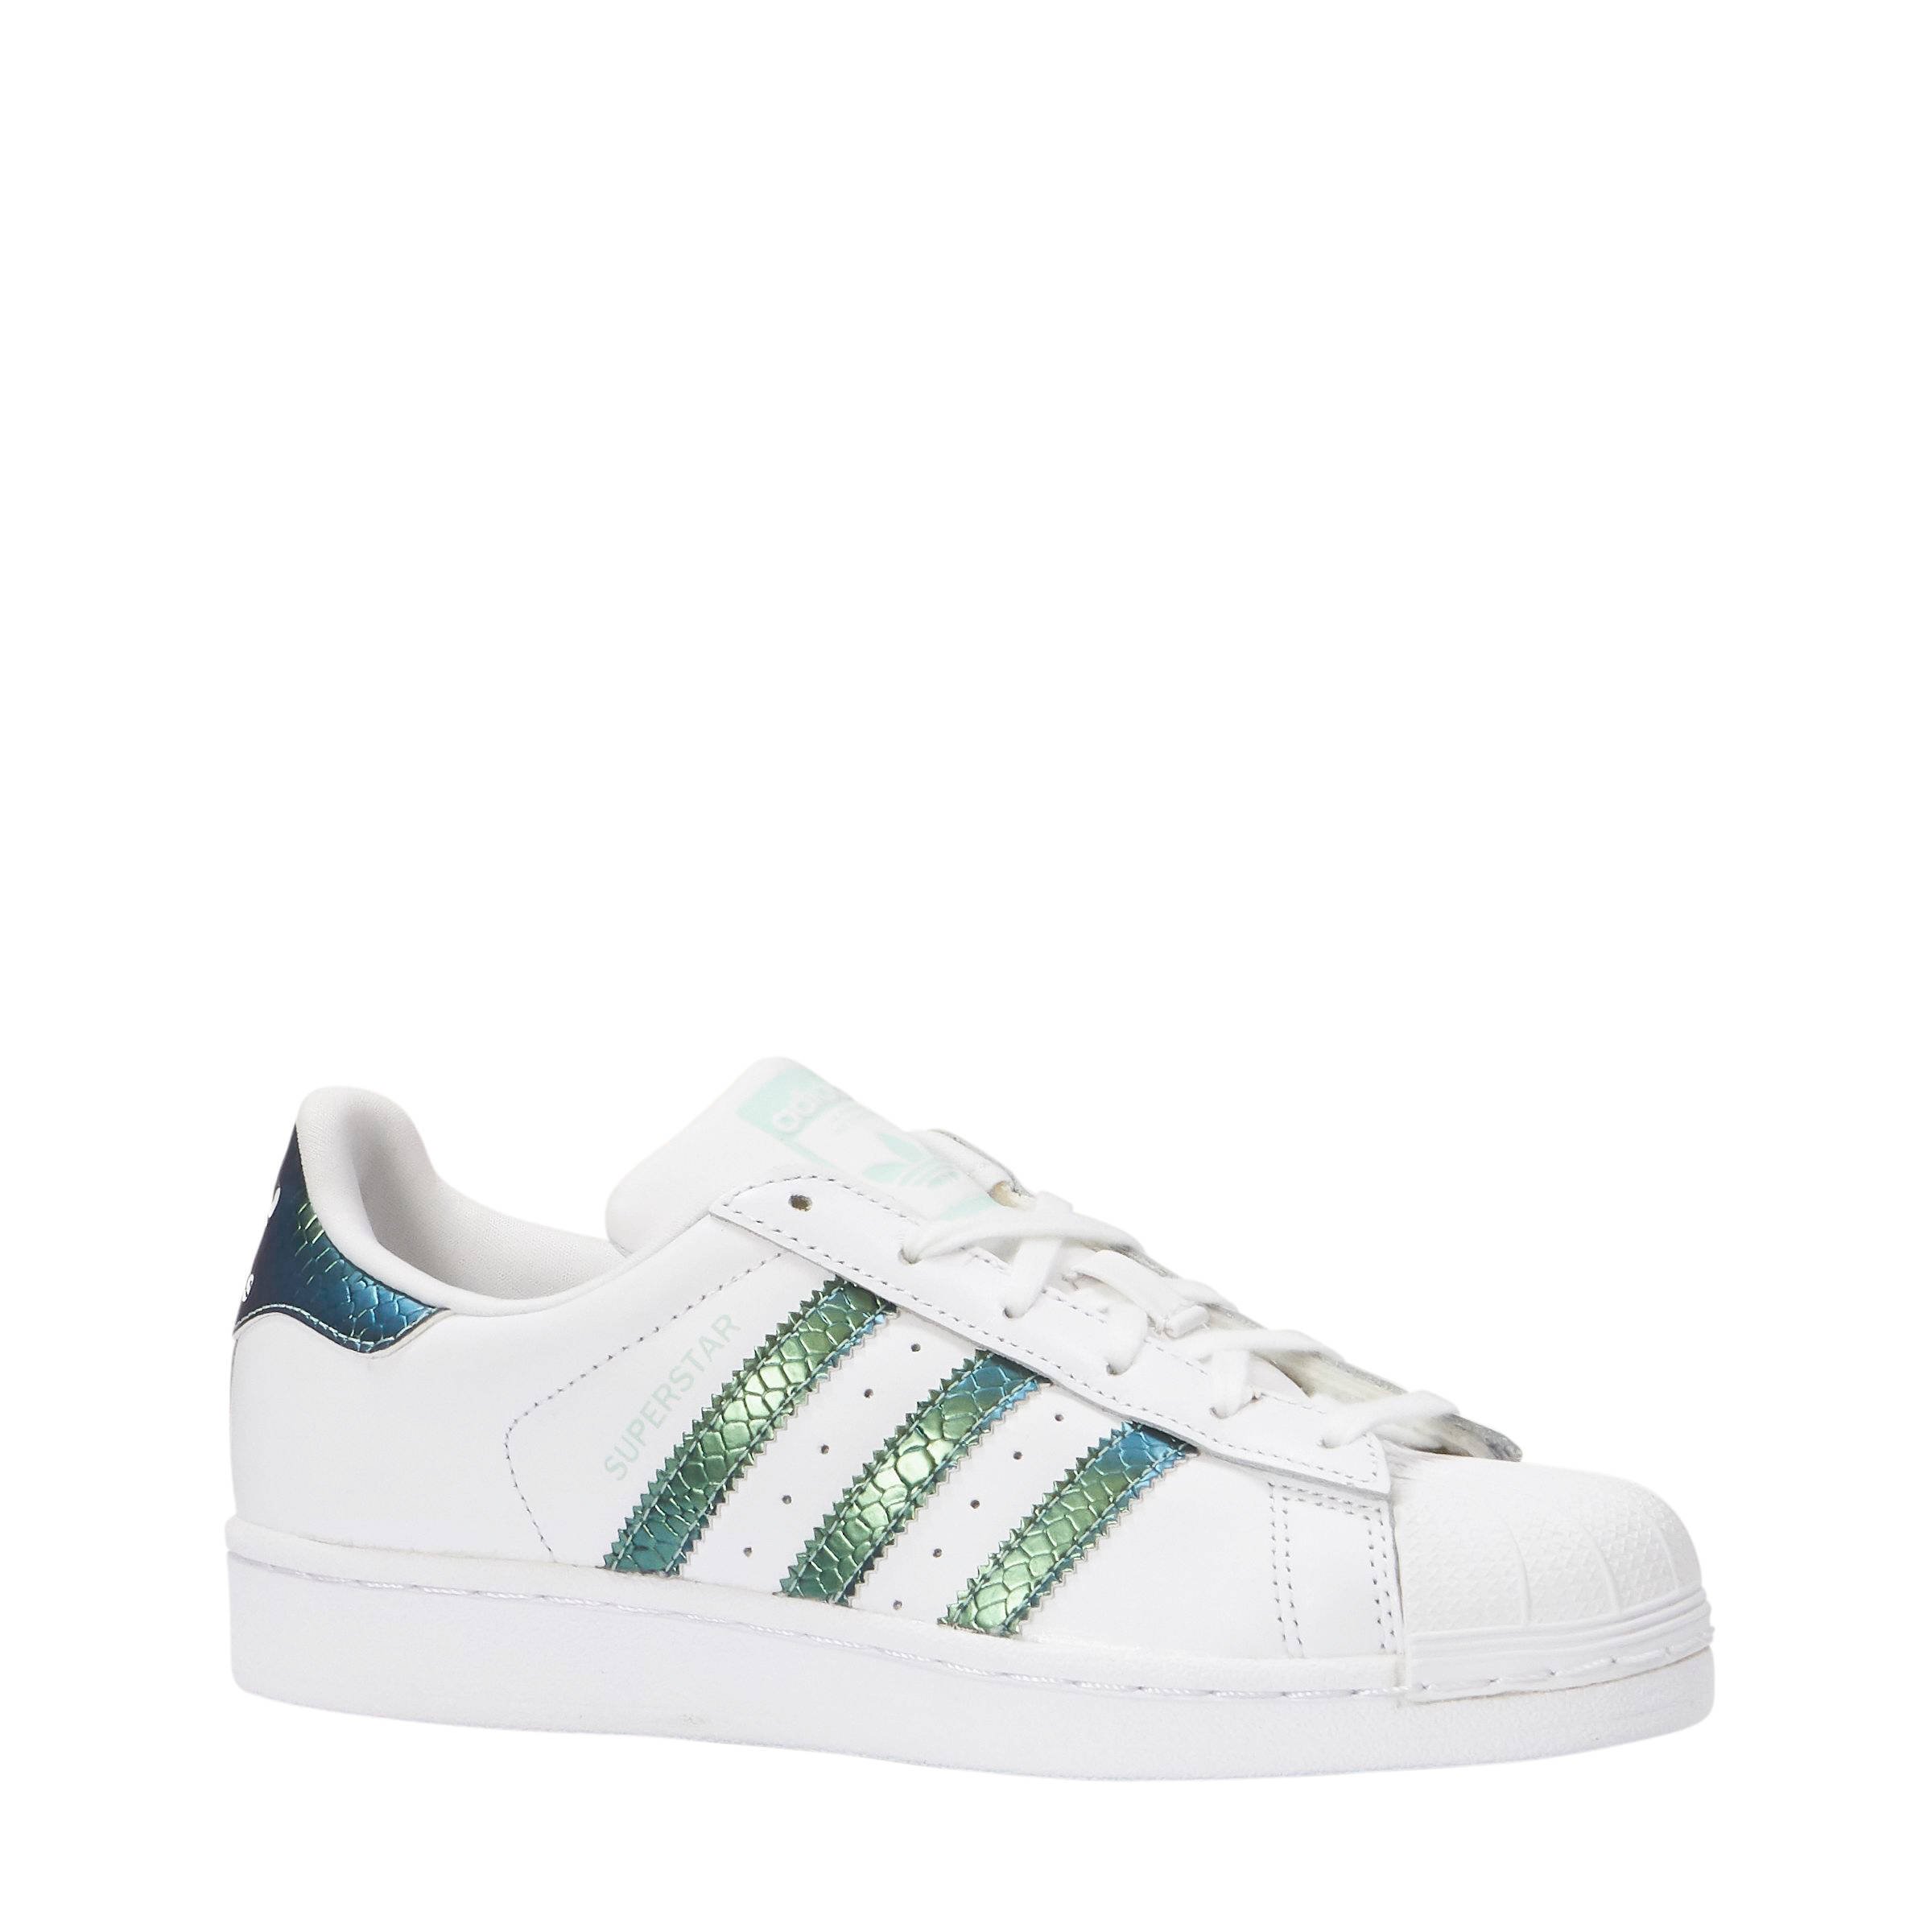 adidas superstar wit groen 3e35d5